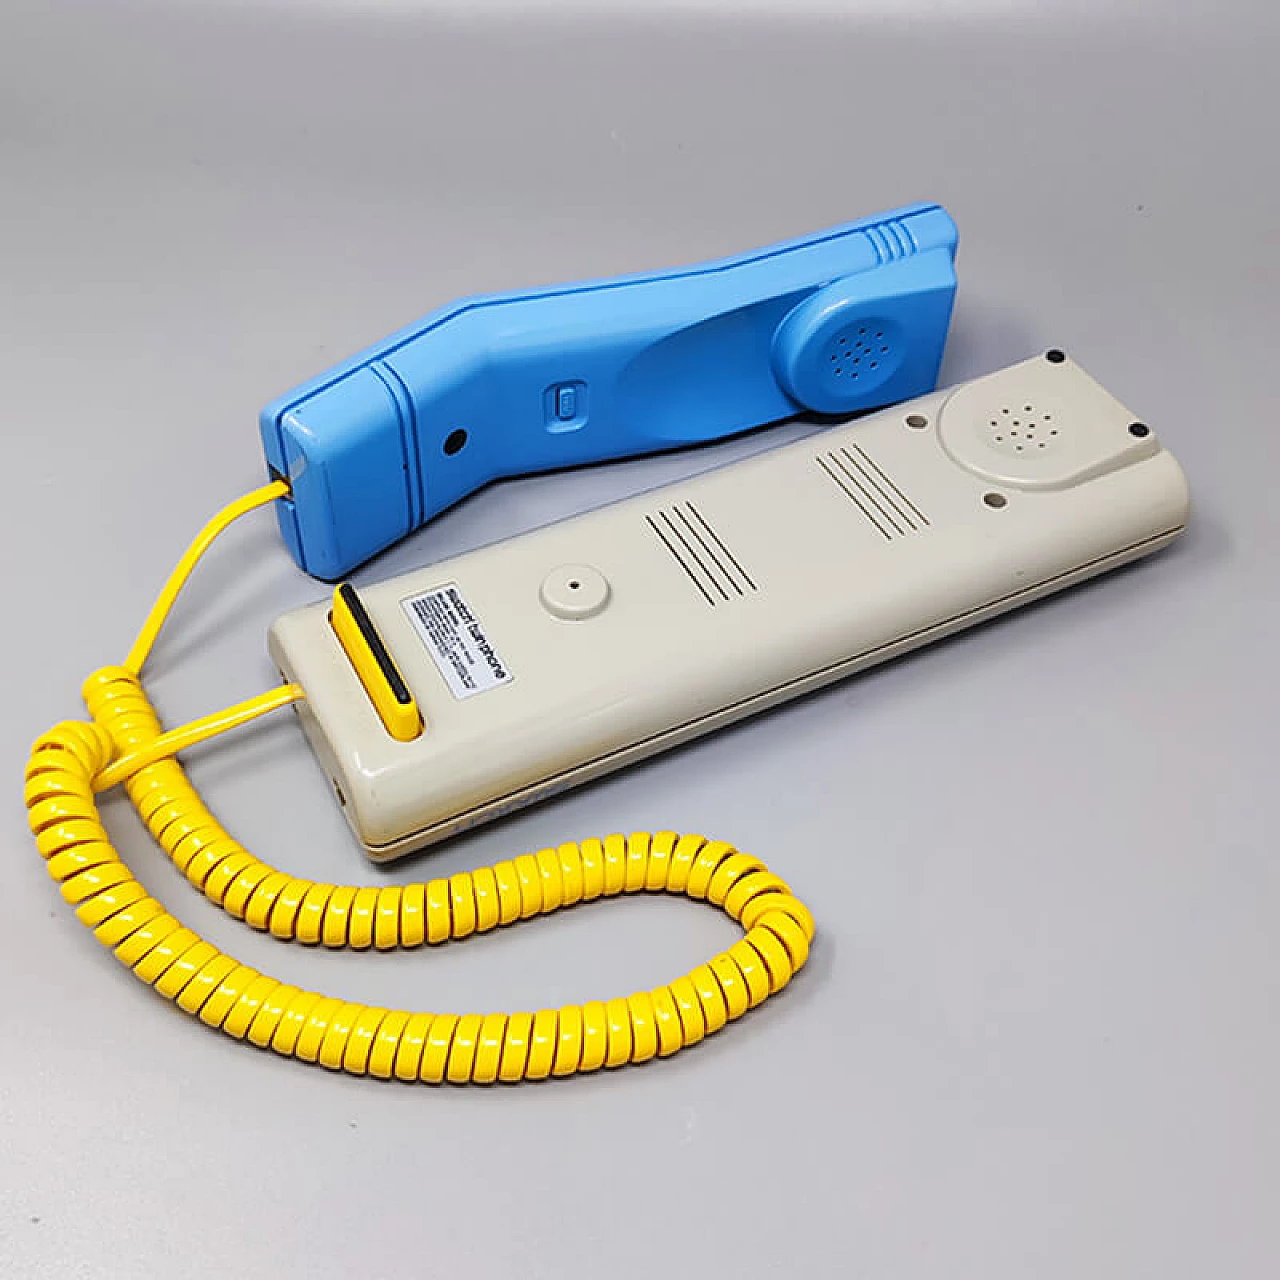 Telefono fisso Swatch Twin Phone Deluxe, anni '80 8